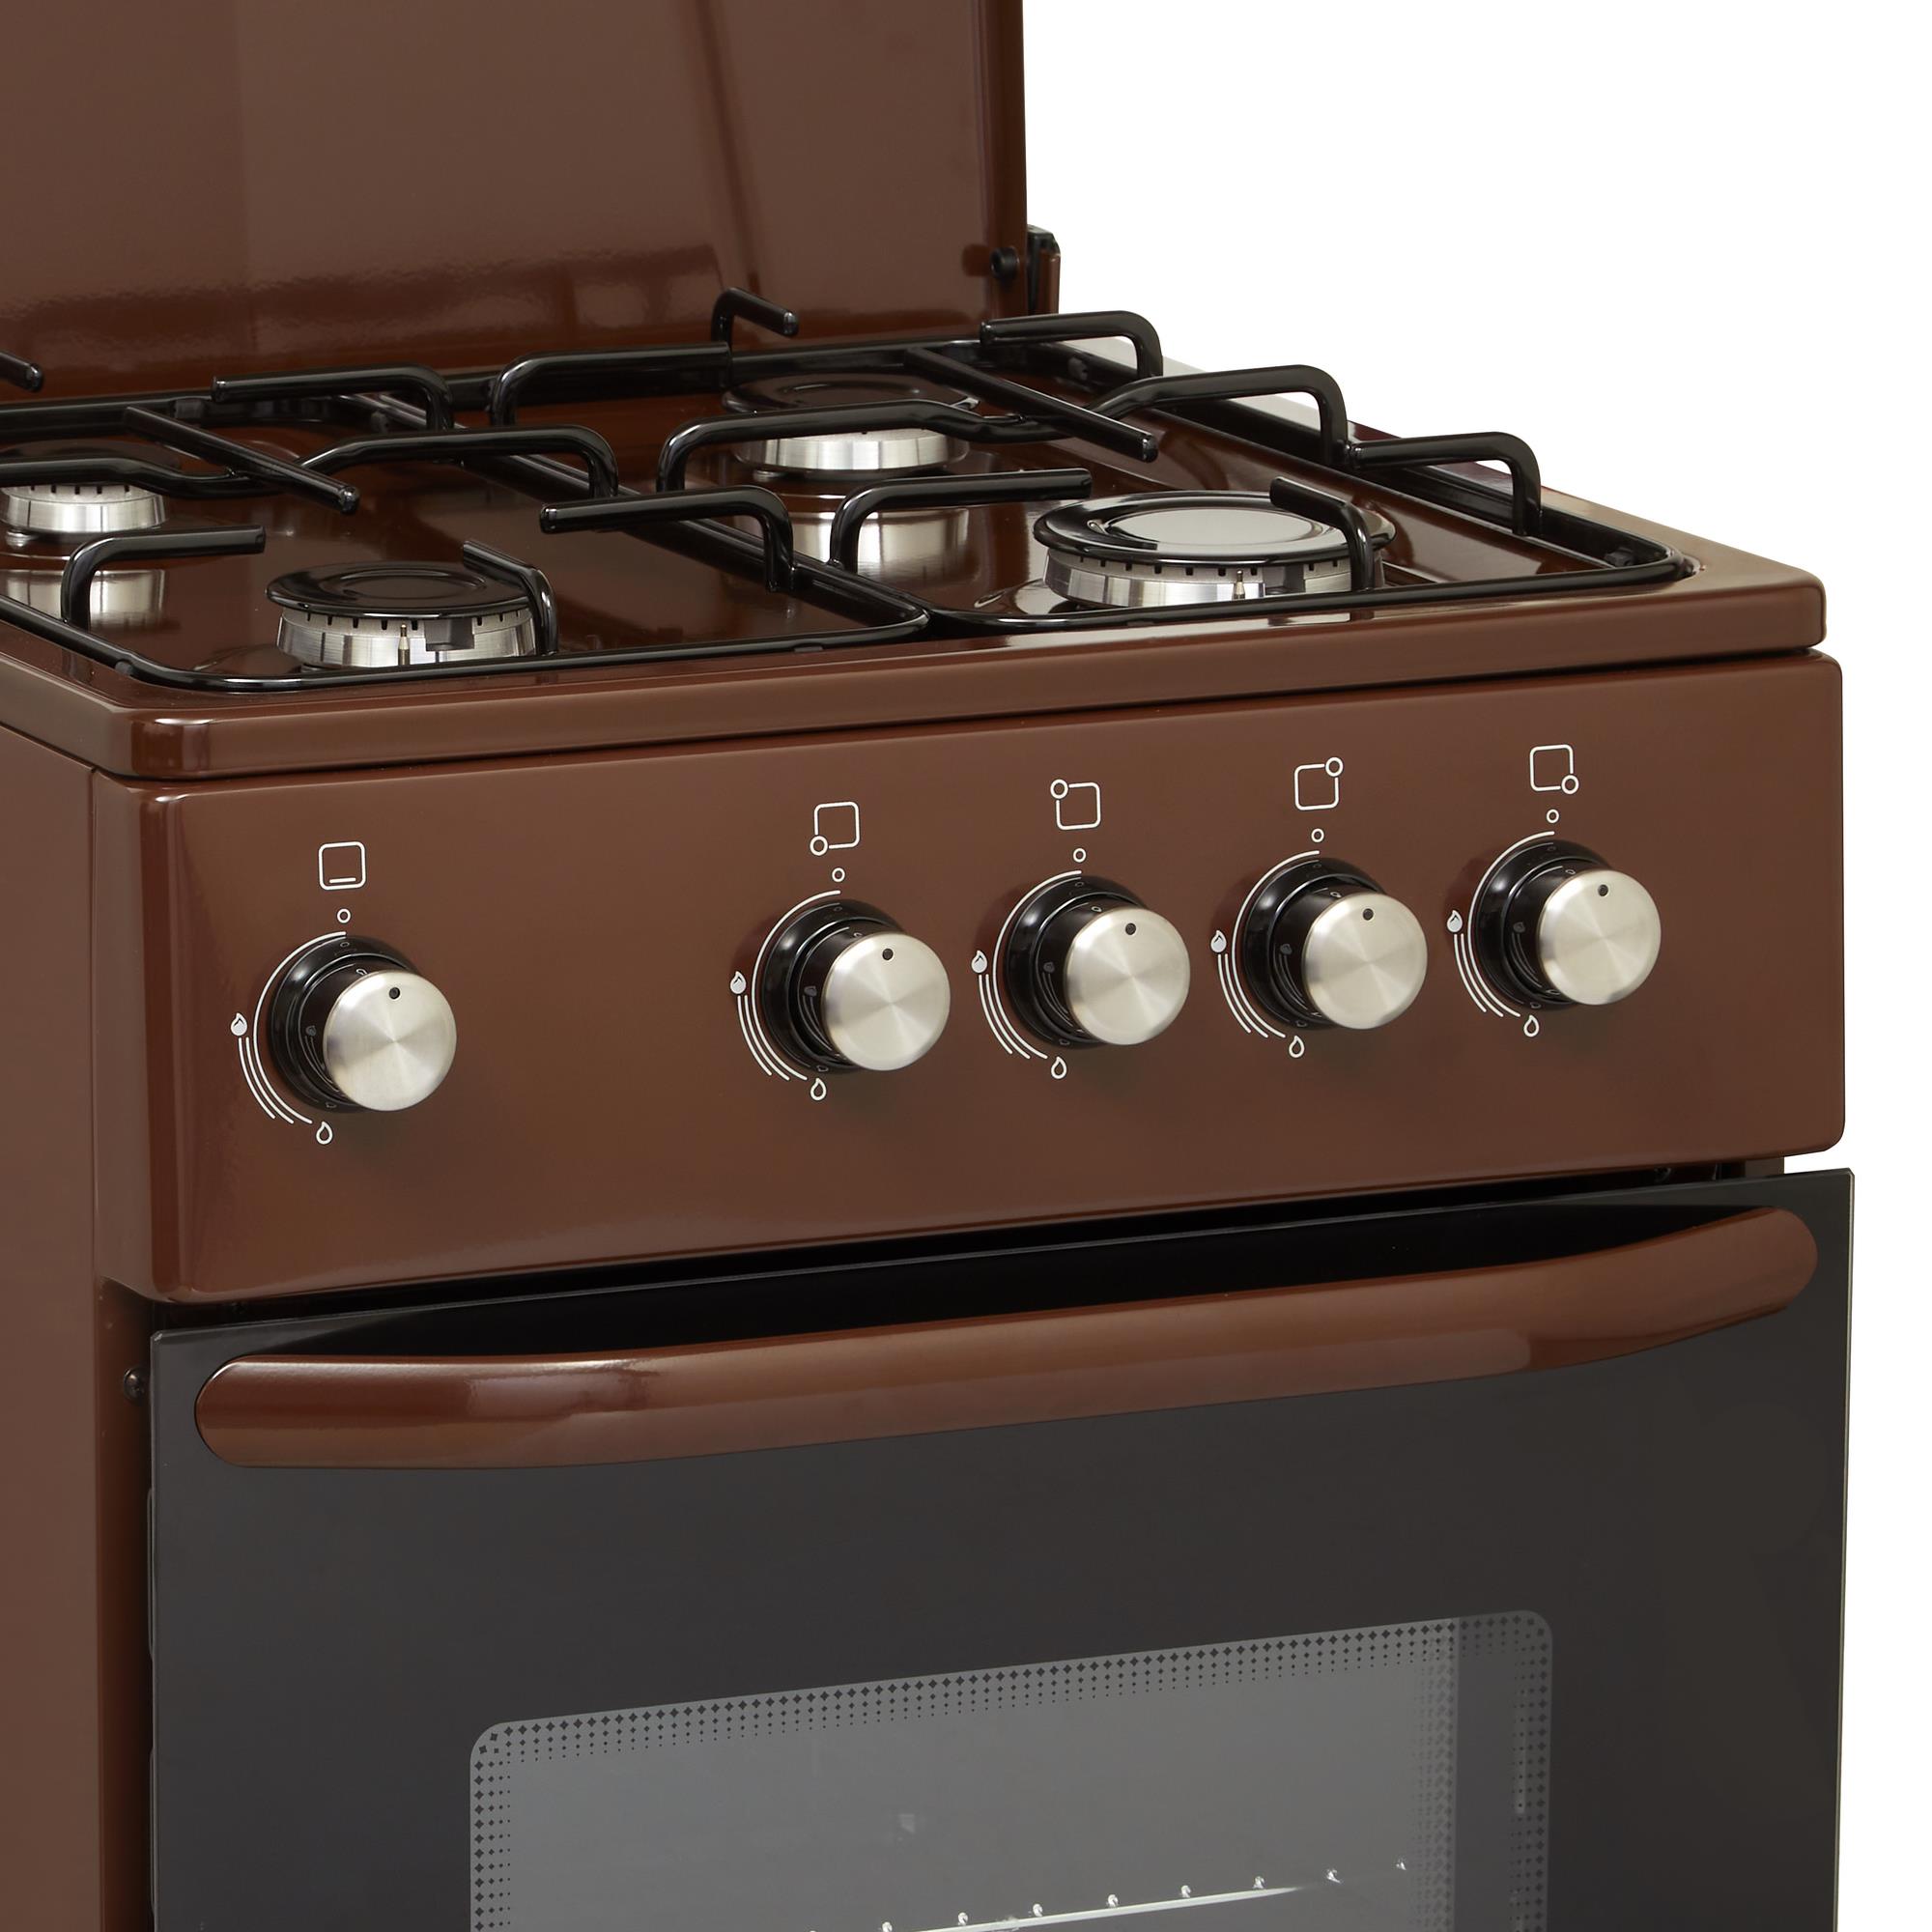 Кухонная плита Eleyus ORUM 5501 EF BR отзывы - изображения 5